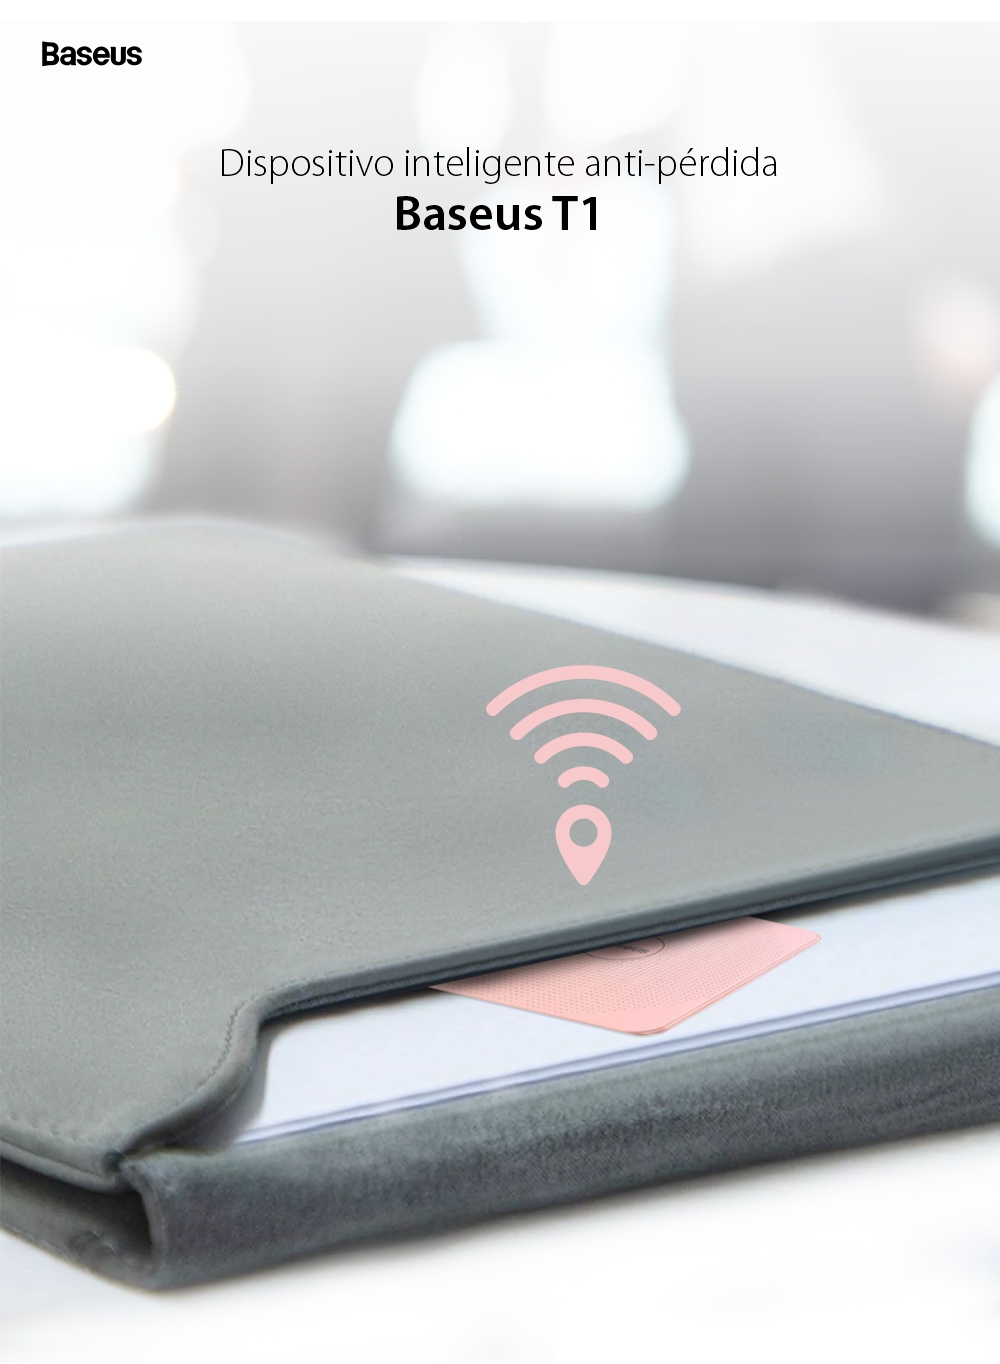 Dispositivo inteligente anti-pérdida Baseus T1, Rosa, Bluetooth, Monitoreo de aplicaciones, Alarma